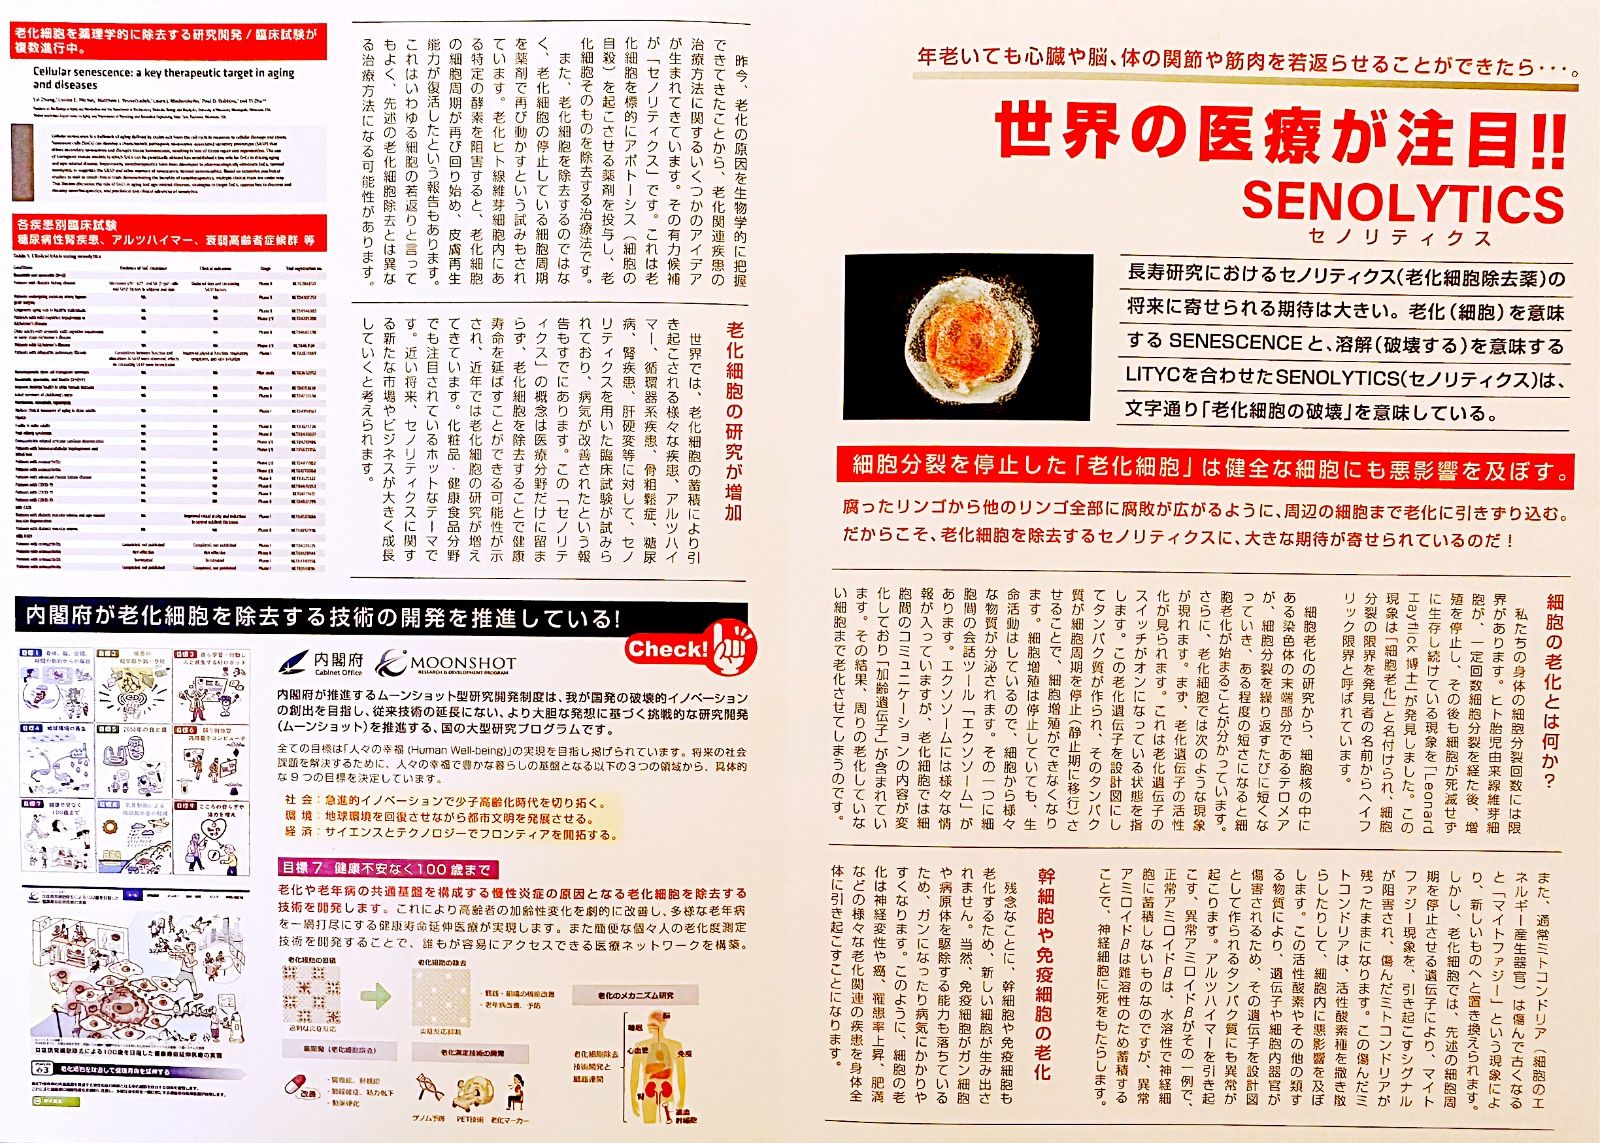 セノリックス 老化細胞除去 セノリティクス 美容液アースジャパン - 美容液